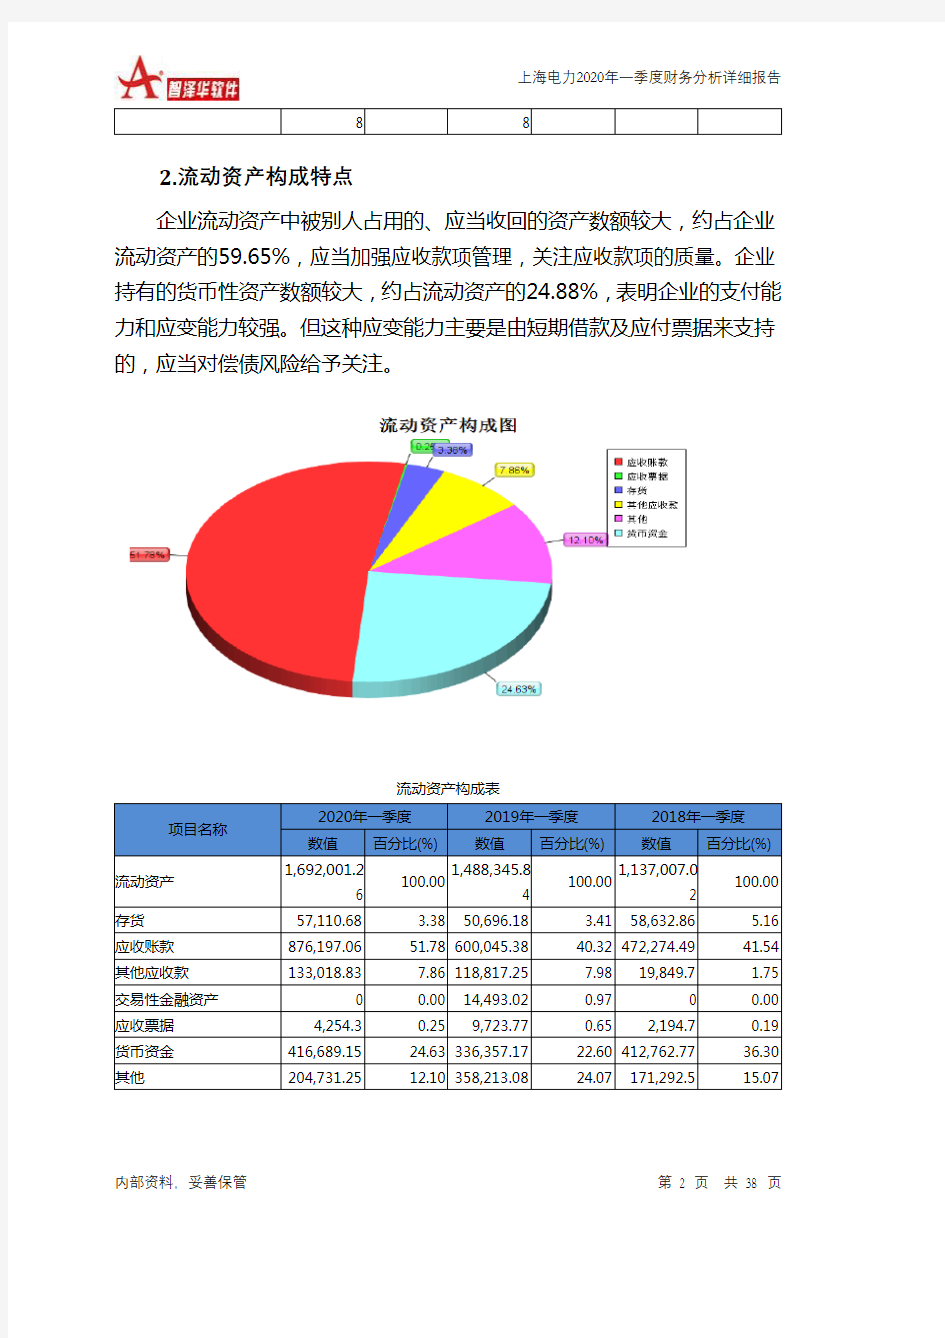 上海电力2020年一季度财务分析详细报告